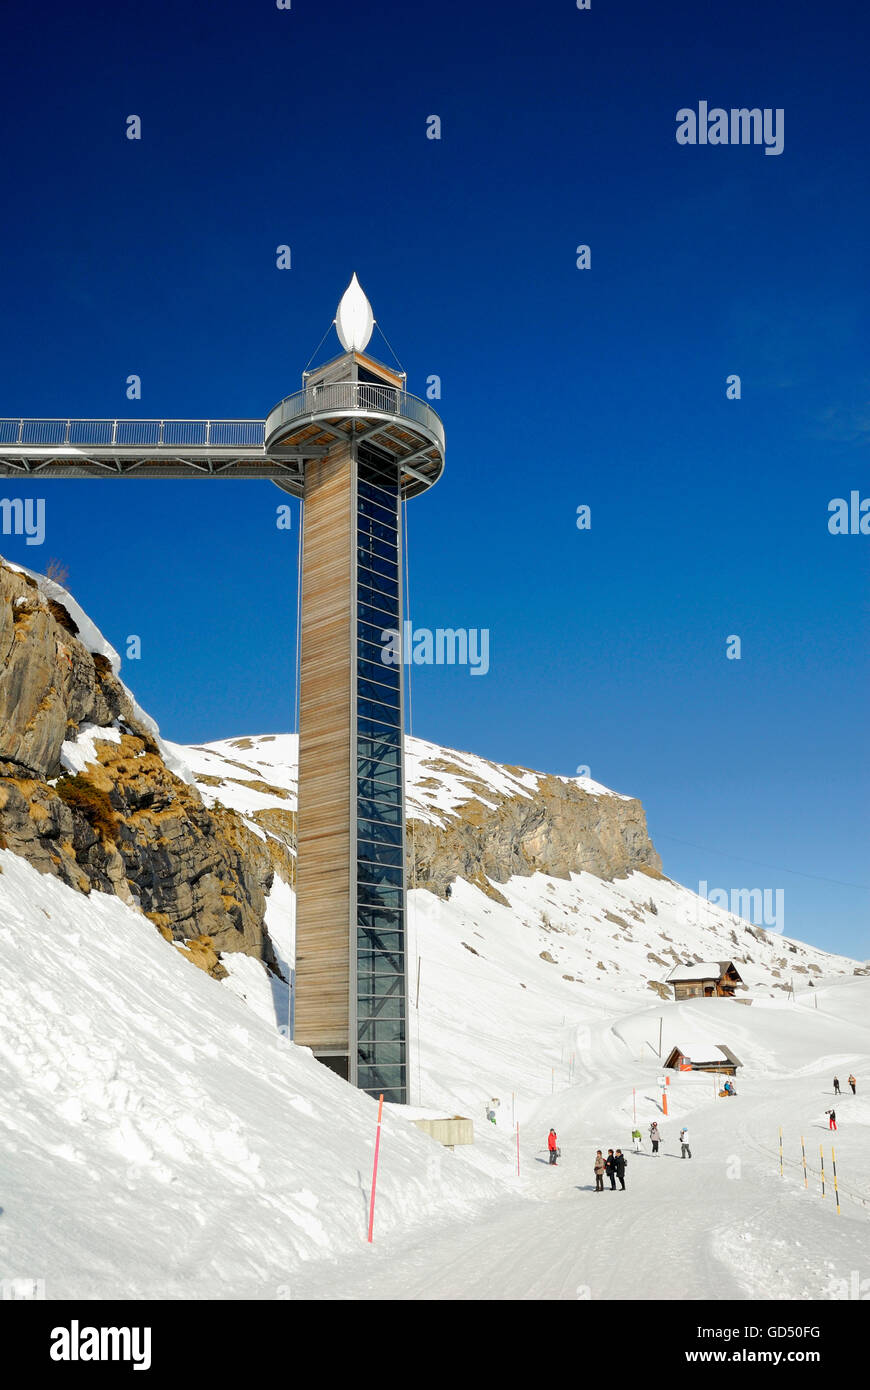 Melchsee-Frutt, Panorama-Lift  in Melchsee-Frutt, Skigebiet in den Schweizer Alpen, Kanton Obwalden, Schweiz, Europa Stock Photo